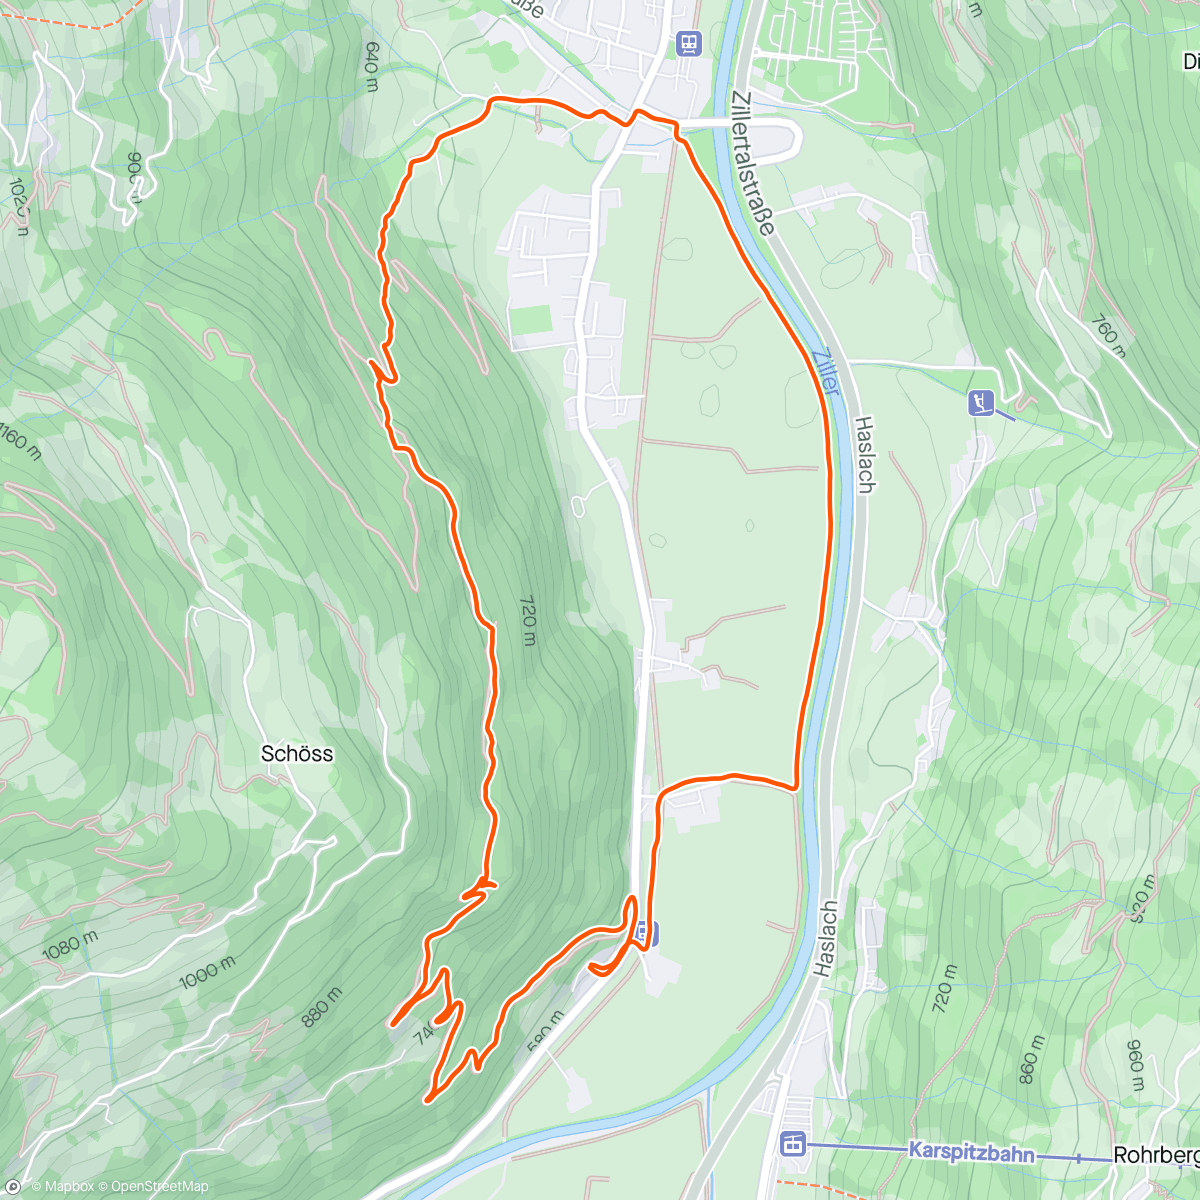 「Zillertal」活動的地圖